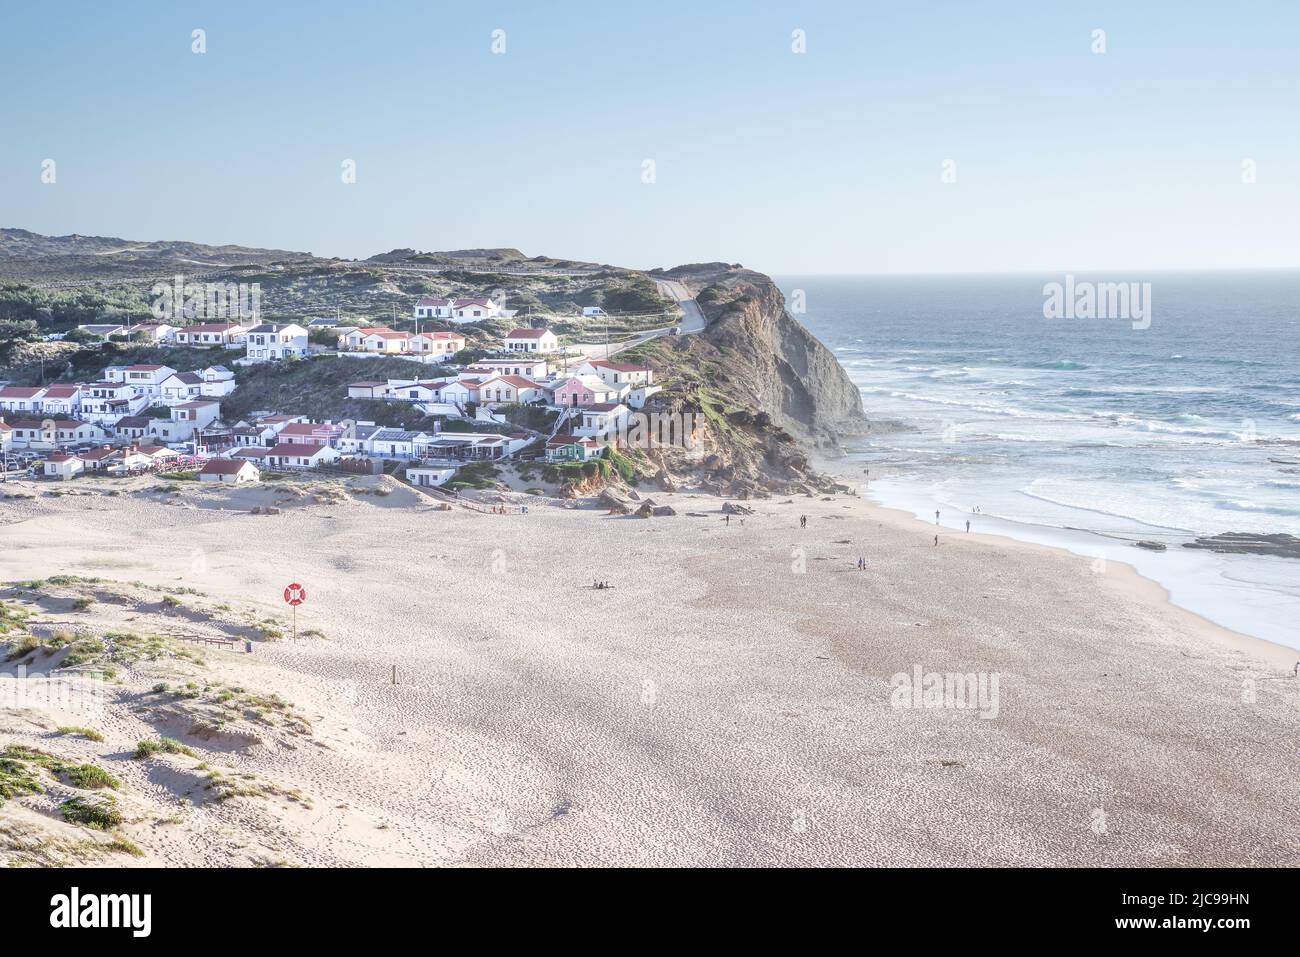 Die hübsche Stadt Praia de Monte Clérigo und der angrenzende Strand, der sich in der späten Nachmittagssonne sonnt - Algarve, Portugal Stockfoto